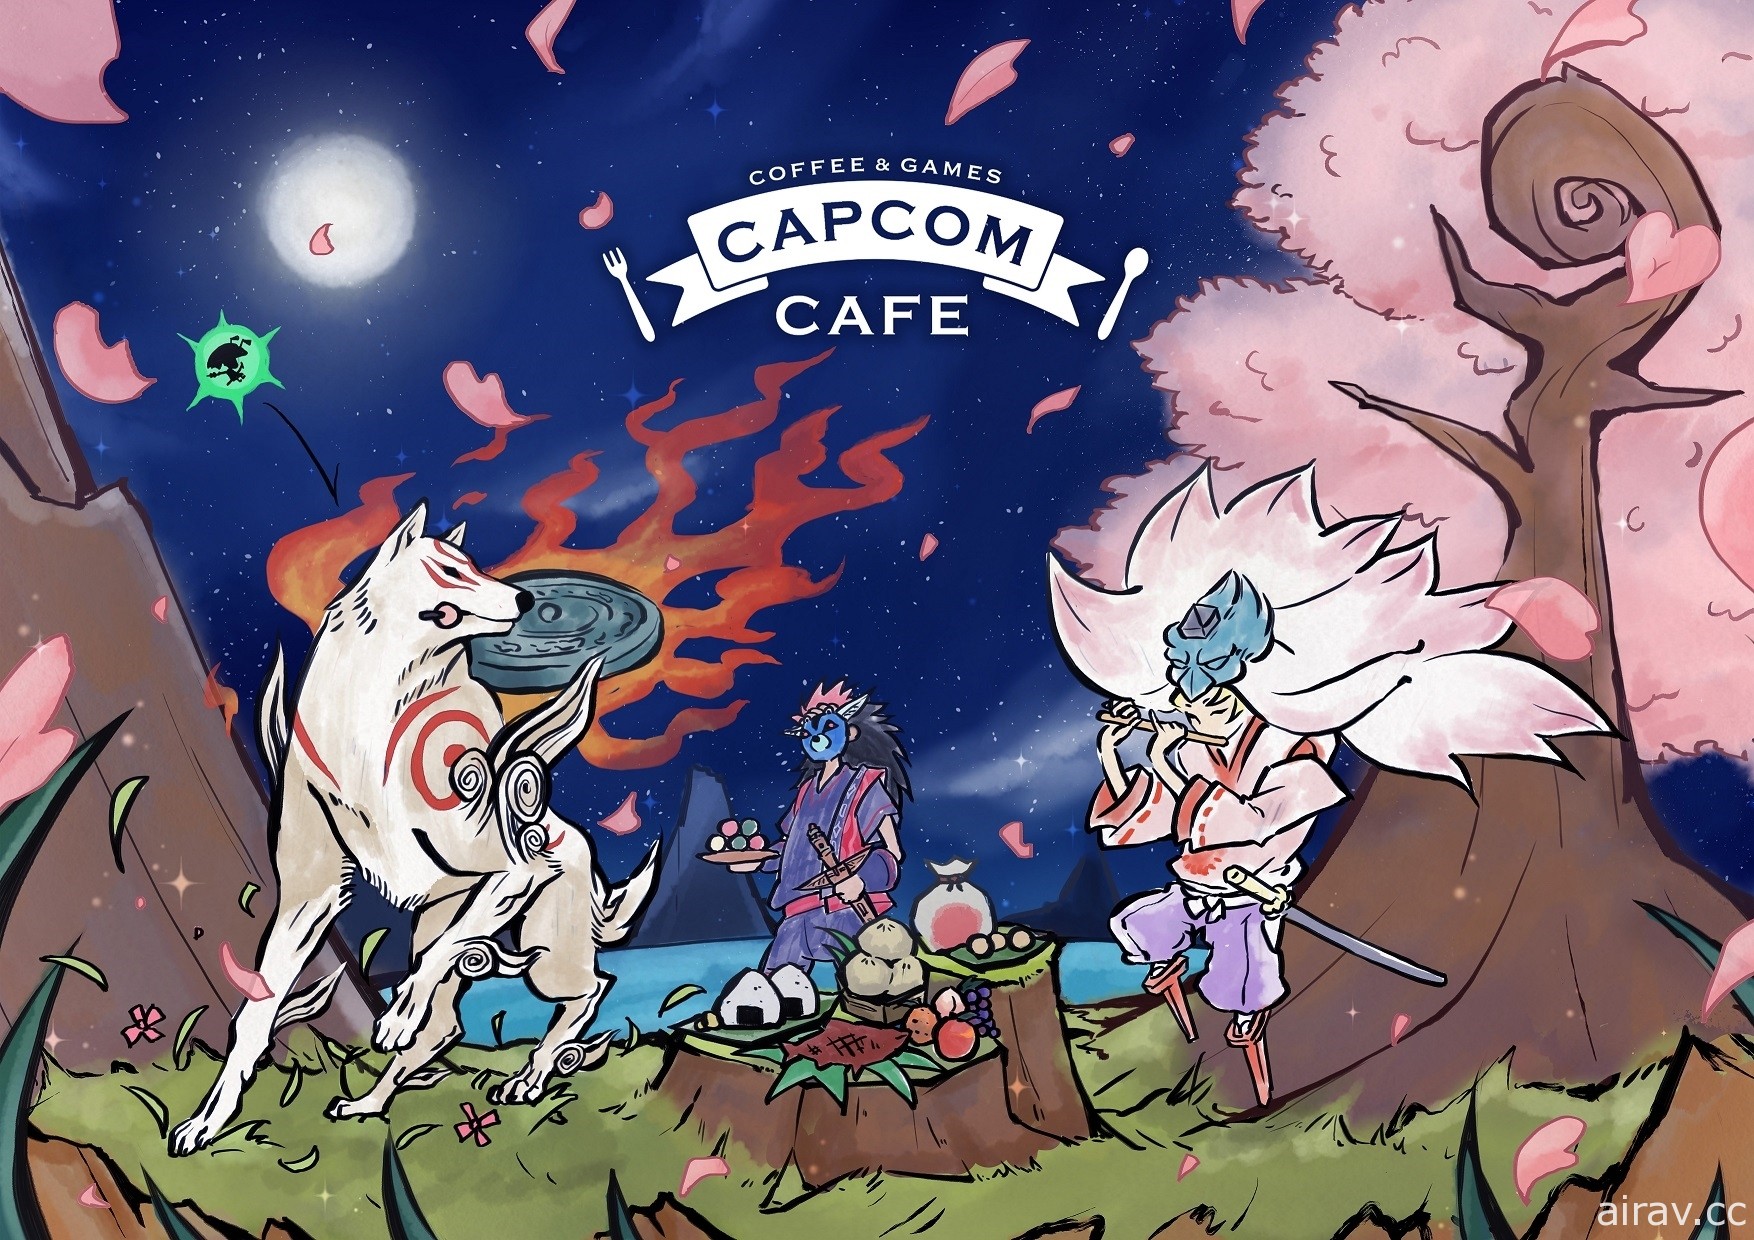 Capcom 咖啡廳《大神》合作活動 6 月 4 日開跑 除了可愛新菜單還有復刻飲料